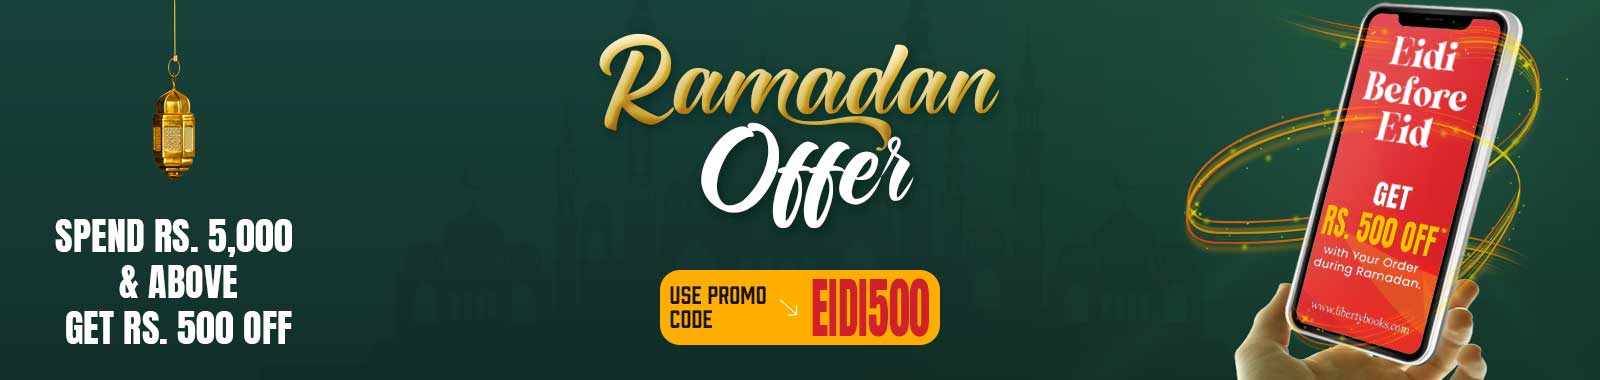 Ramadan Sale